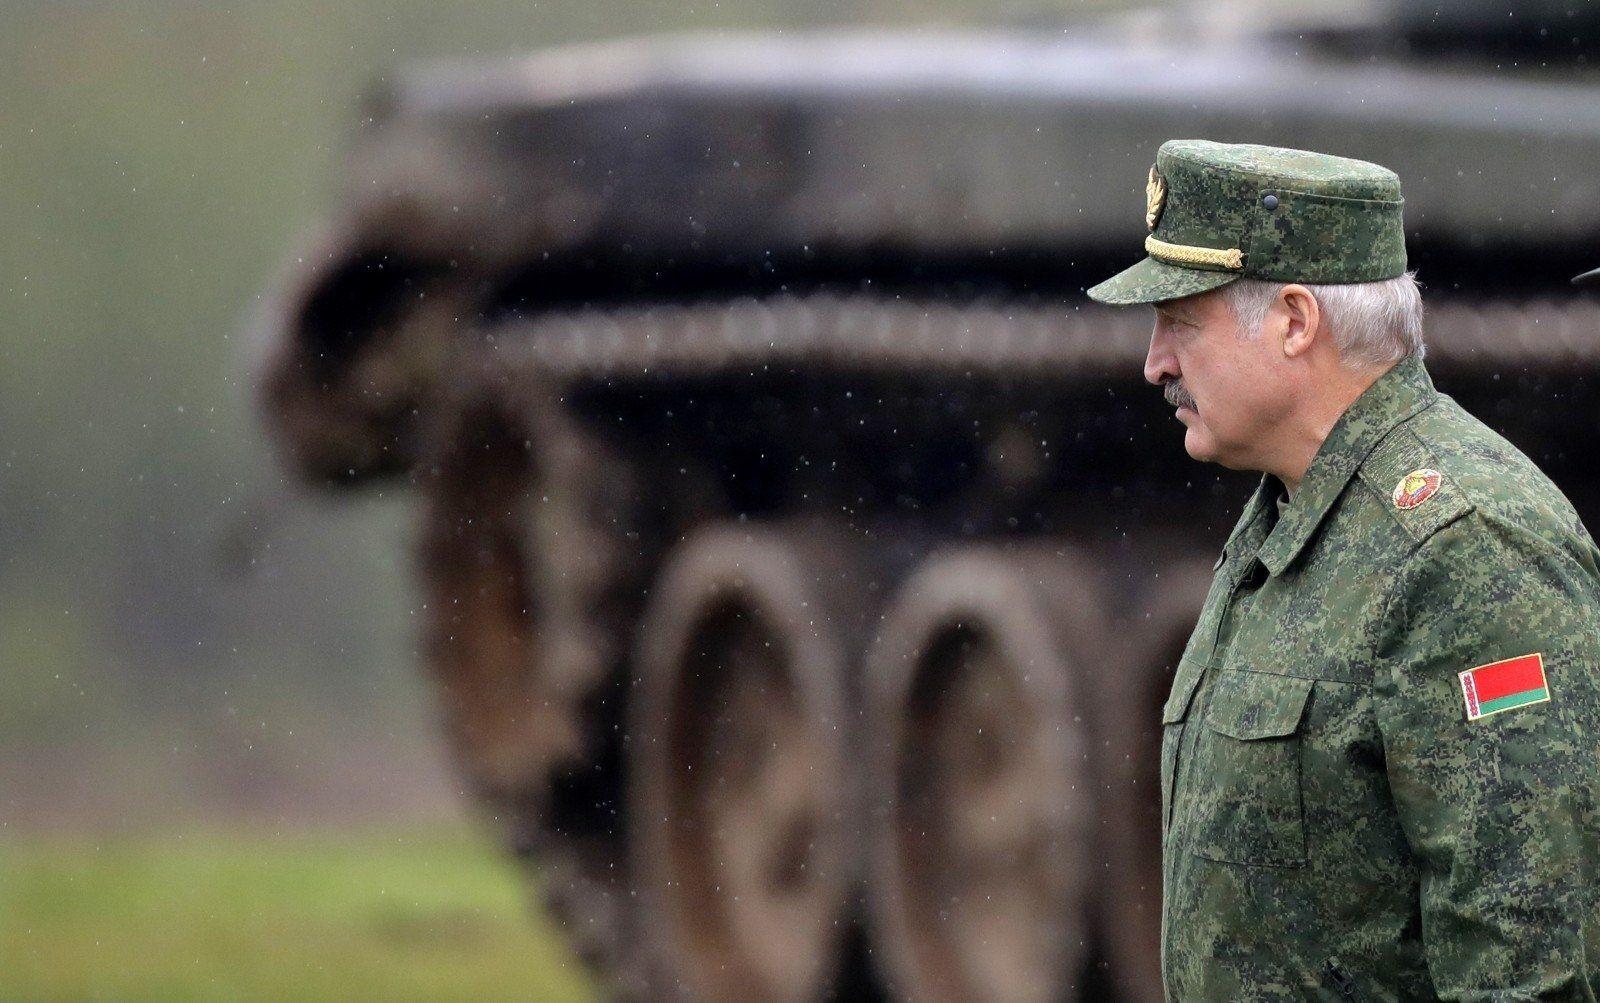 Лукашенко заявил о милитаризации Восточной Европы